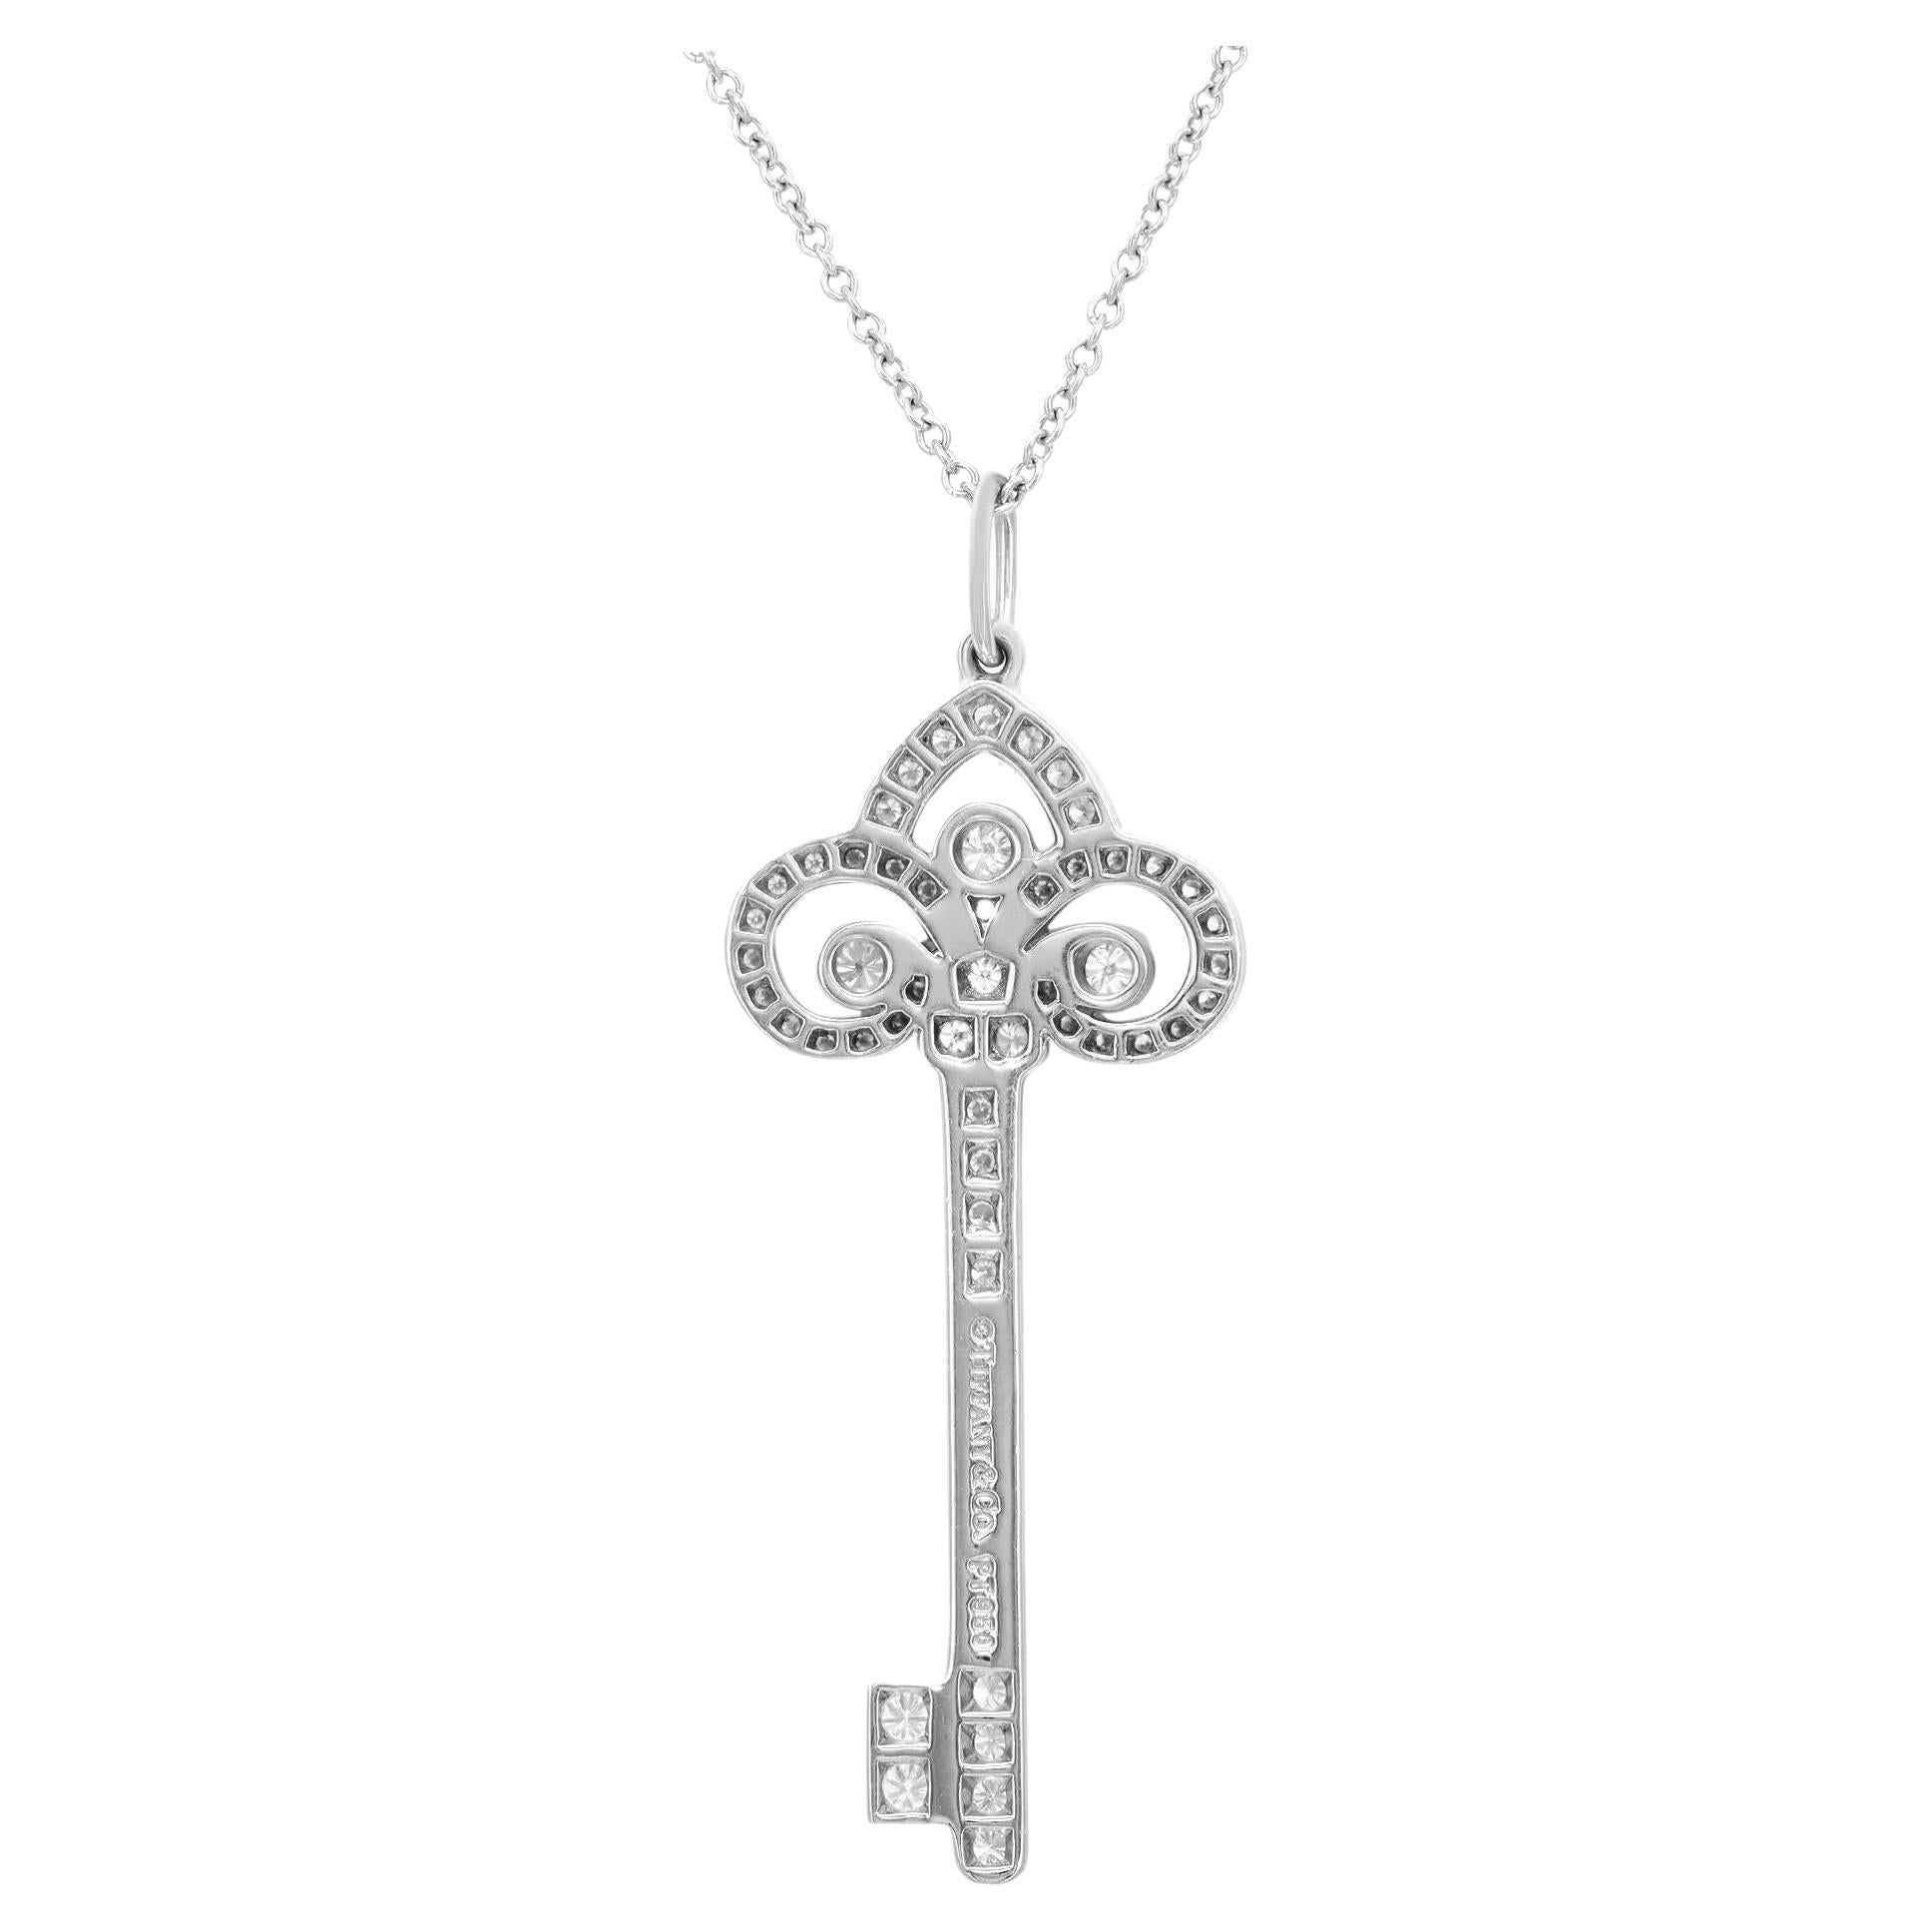 Fabuleux et chic, cet éblouissant collier à pendentif clé en diamant Fleur de Lis de Tiffany & Co est un ajout remarquable à vos looks de tous les jours et du soir. Cette pièce apporte une touche d'élégance à tout ensemble avec lequel vous